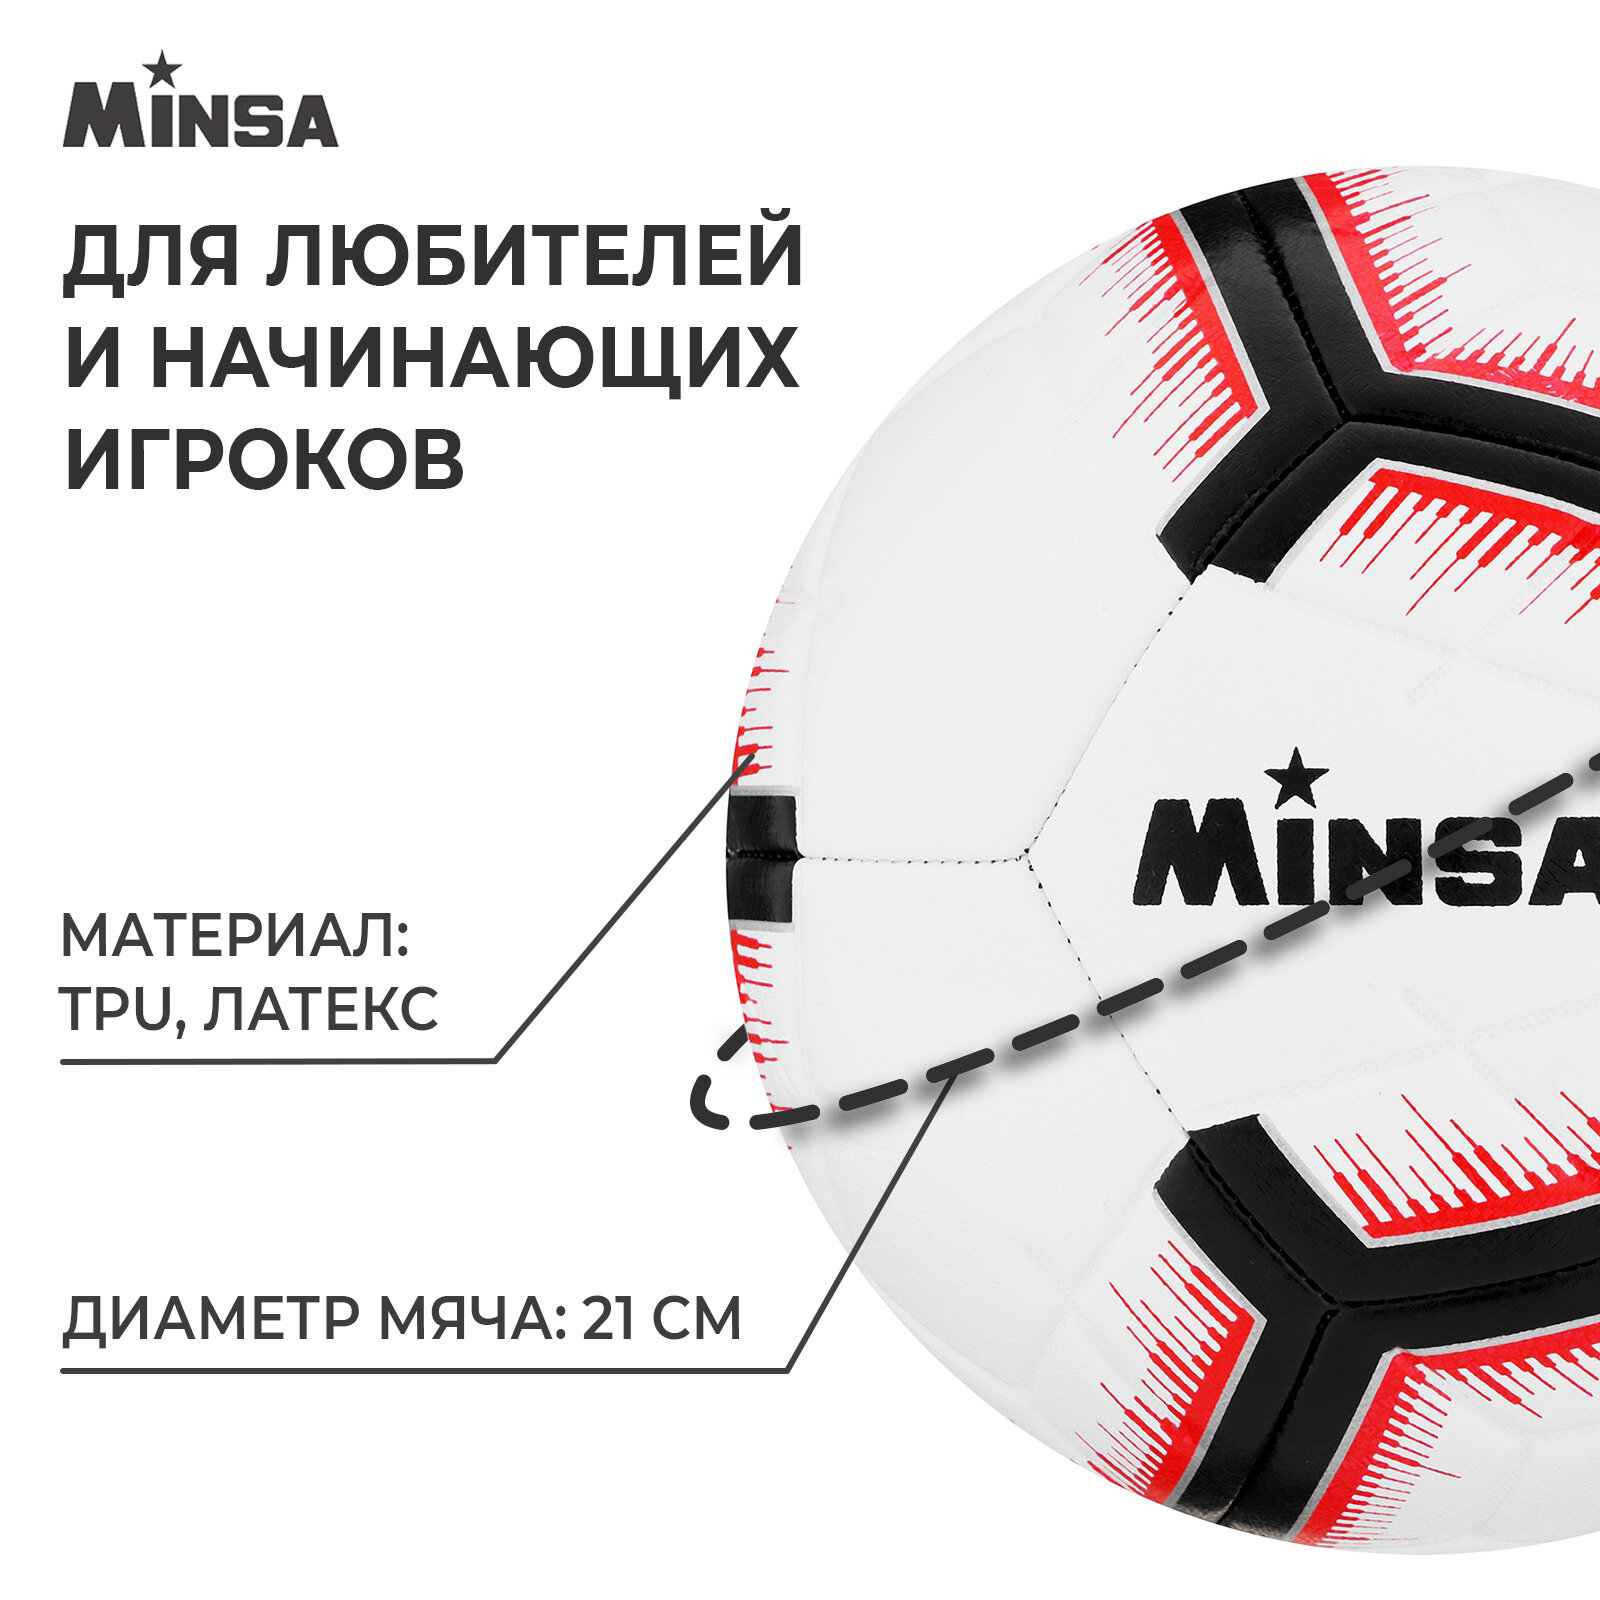 Мяч футбольный Minsa, 5 размер, TPE, вес 400 гр, 12 панелей, маш. сшивка, камера латекс